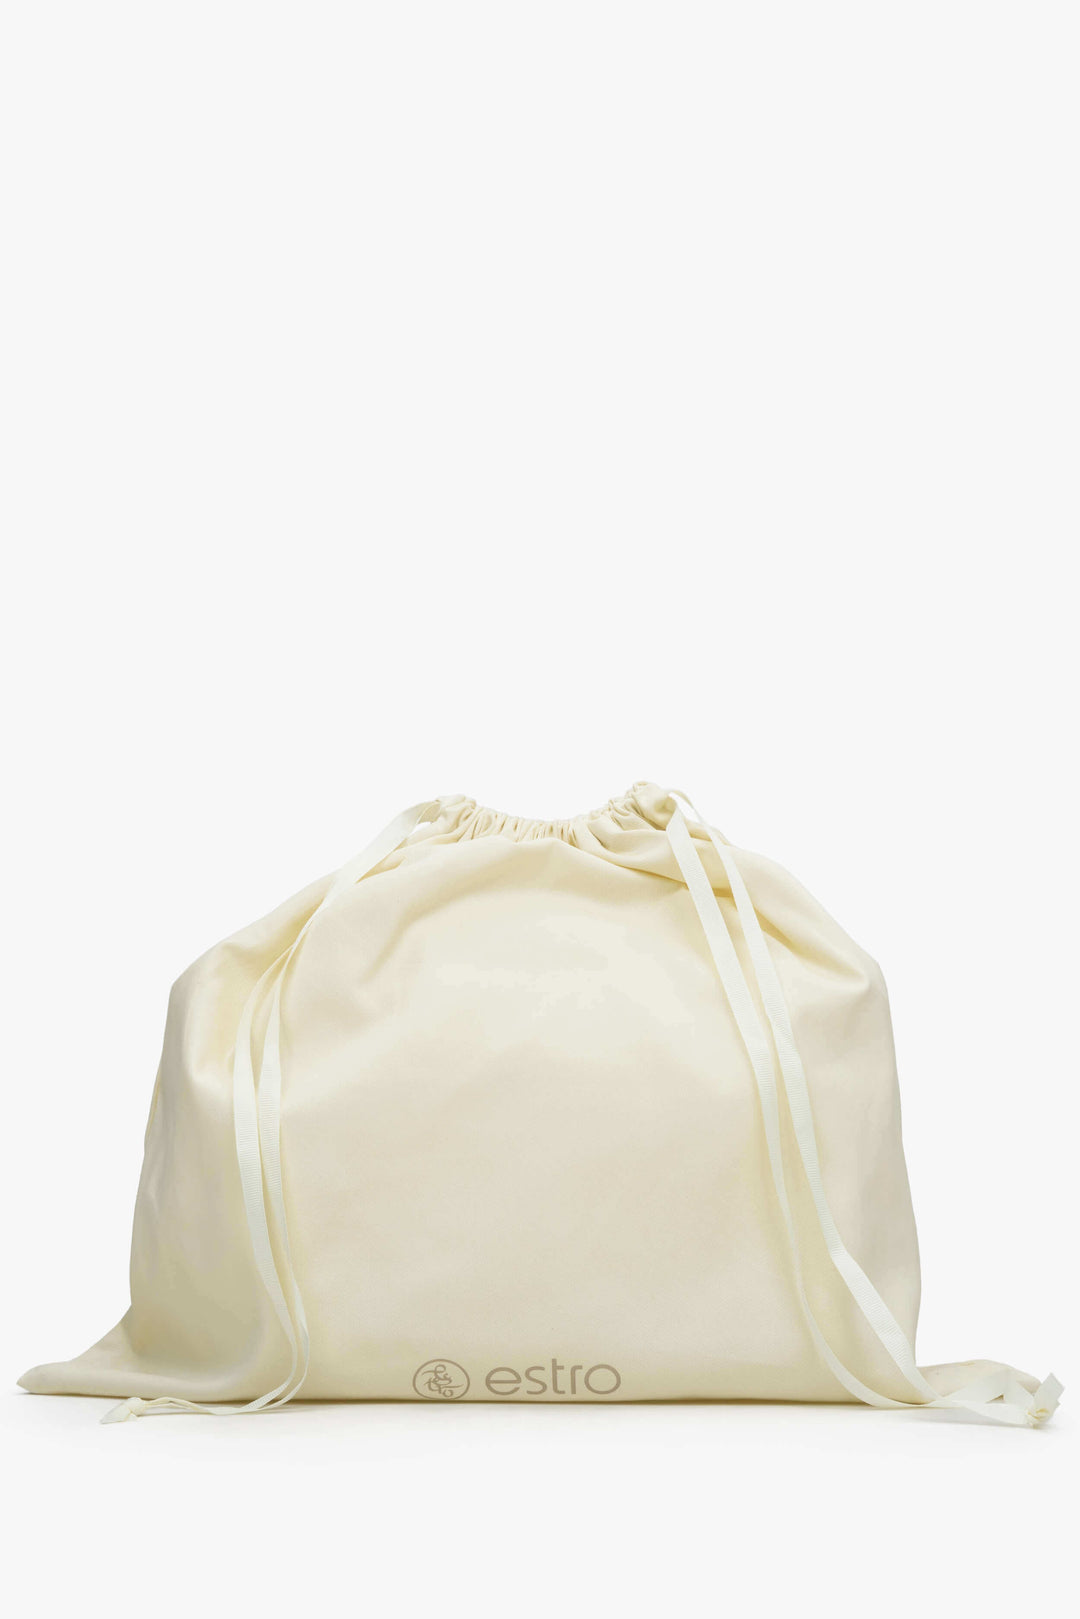 Women's Sand Beige Leather Shoulder Bag Estro ER00113009